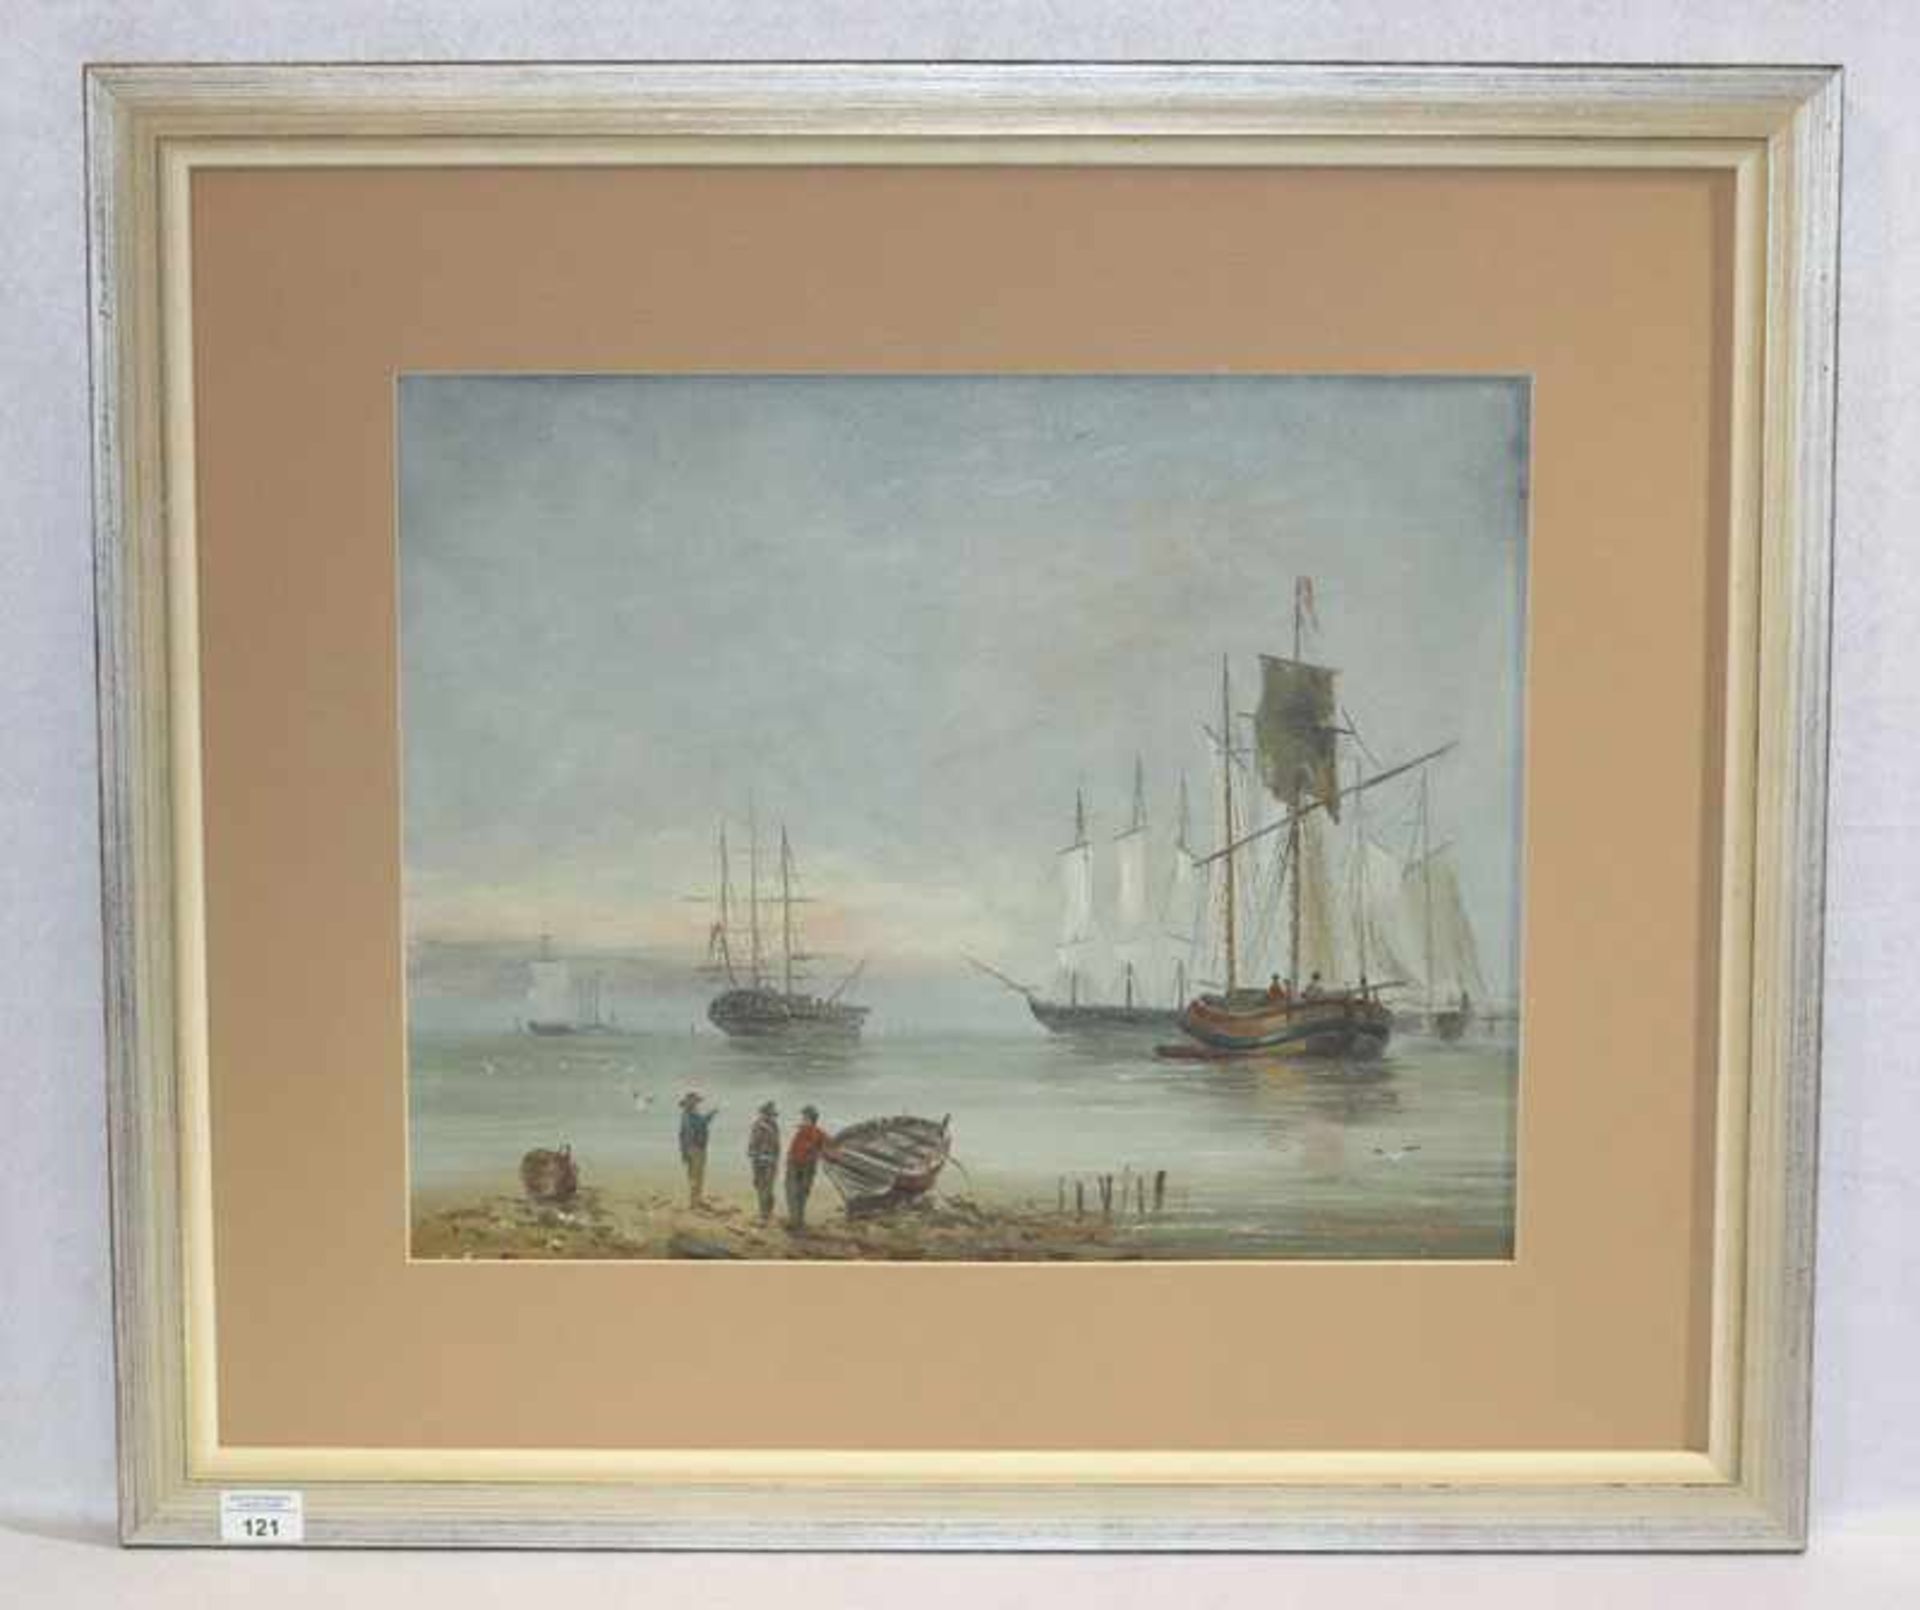 Gemälde ÖL/Karton 'Küsten-Szenerie mit Segelbooten', undeutlich signiert, gerahmt, Rahmen leicht